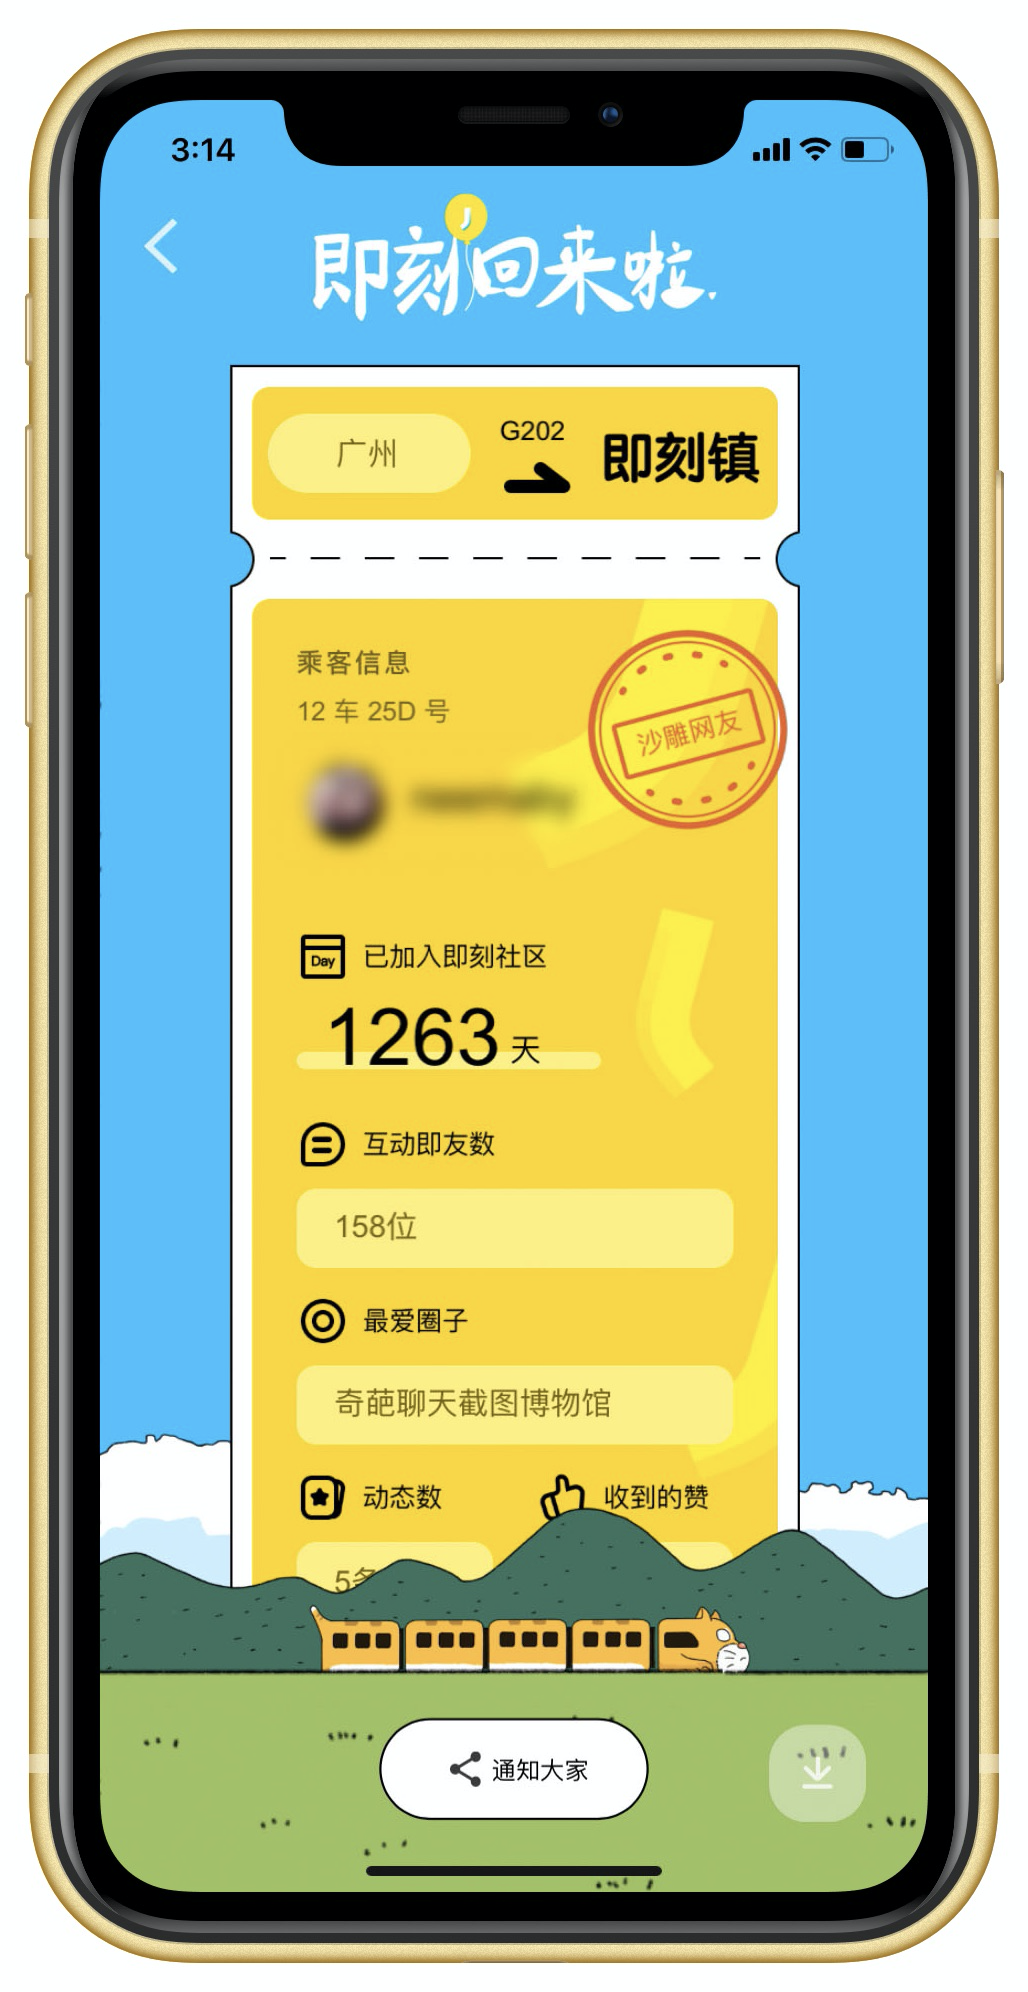 即刻 App 重新上线 青春的 黄色 记忆回来了 爱范儿